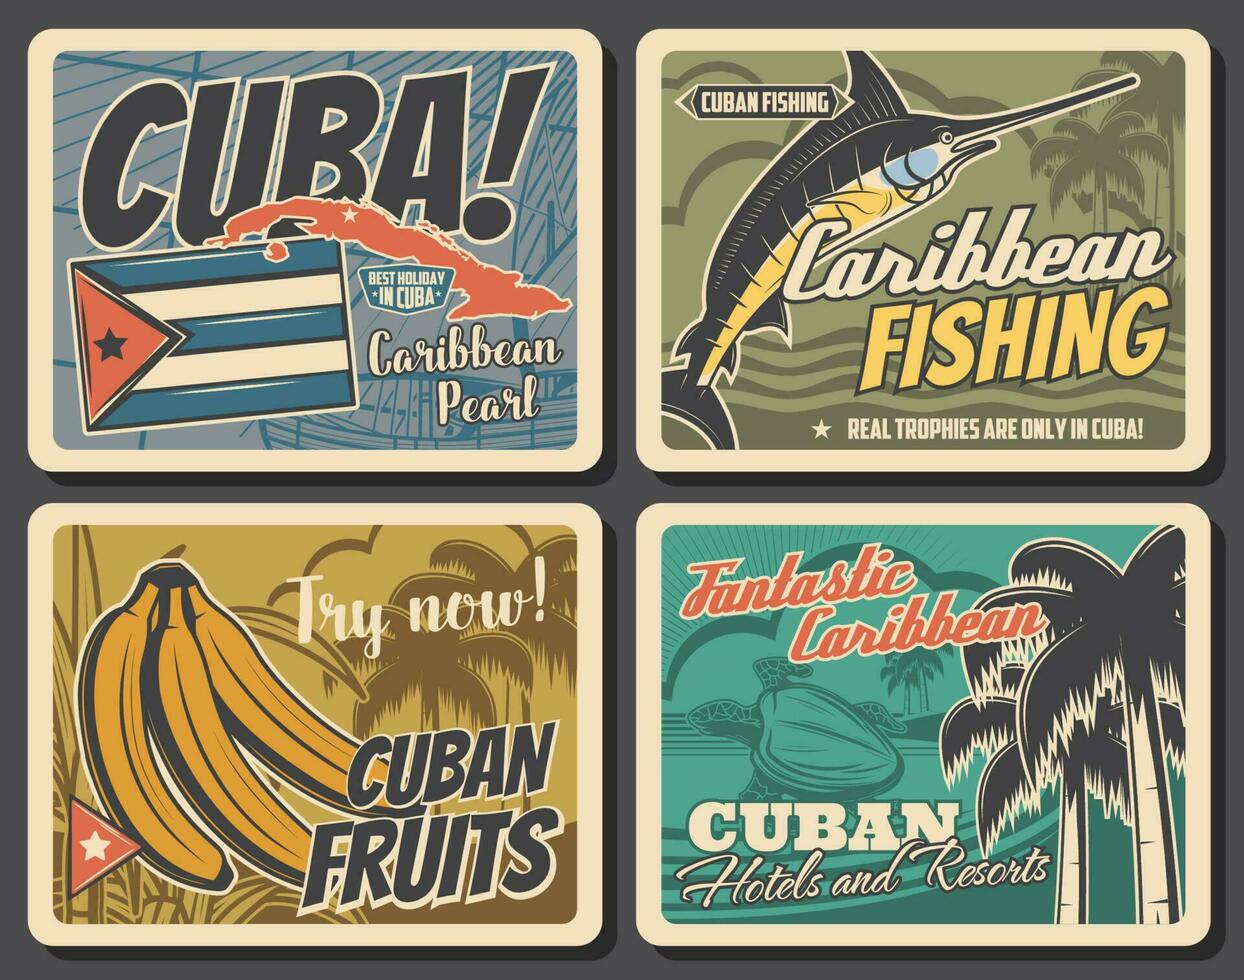 caribe e Cuba, viagem, pescaria, período de férias vetor